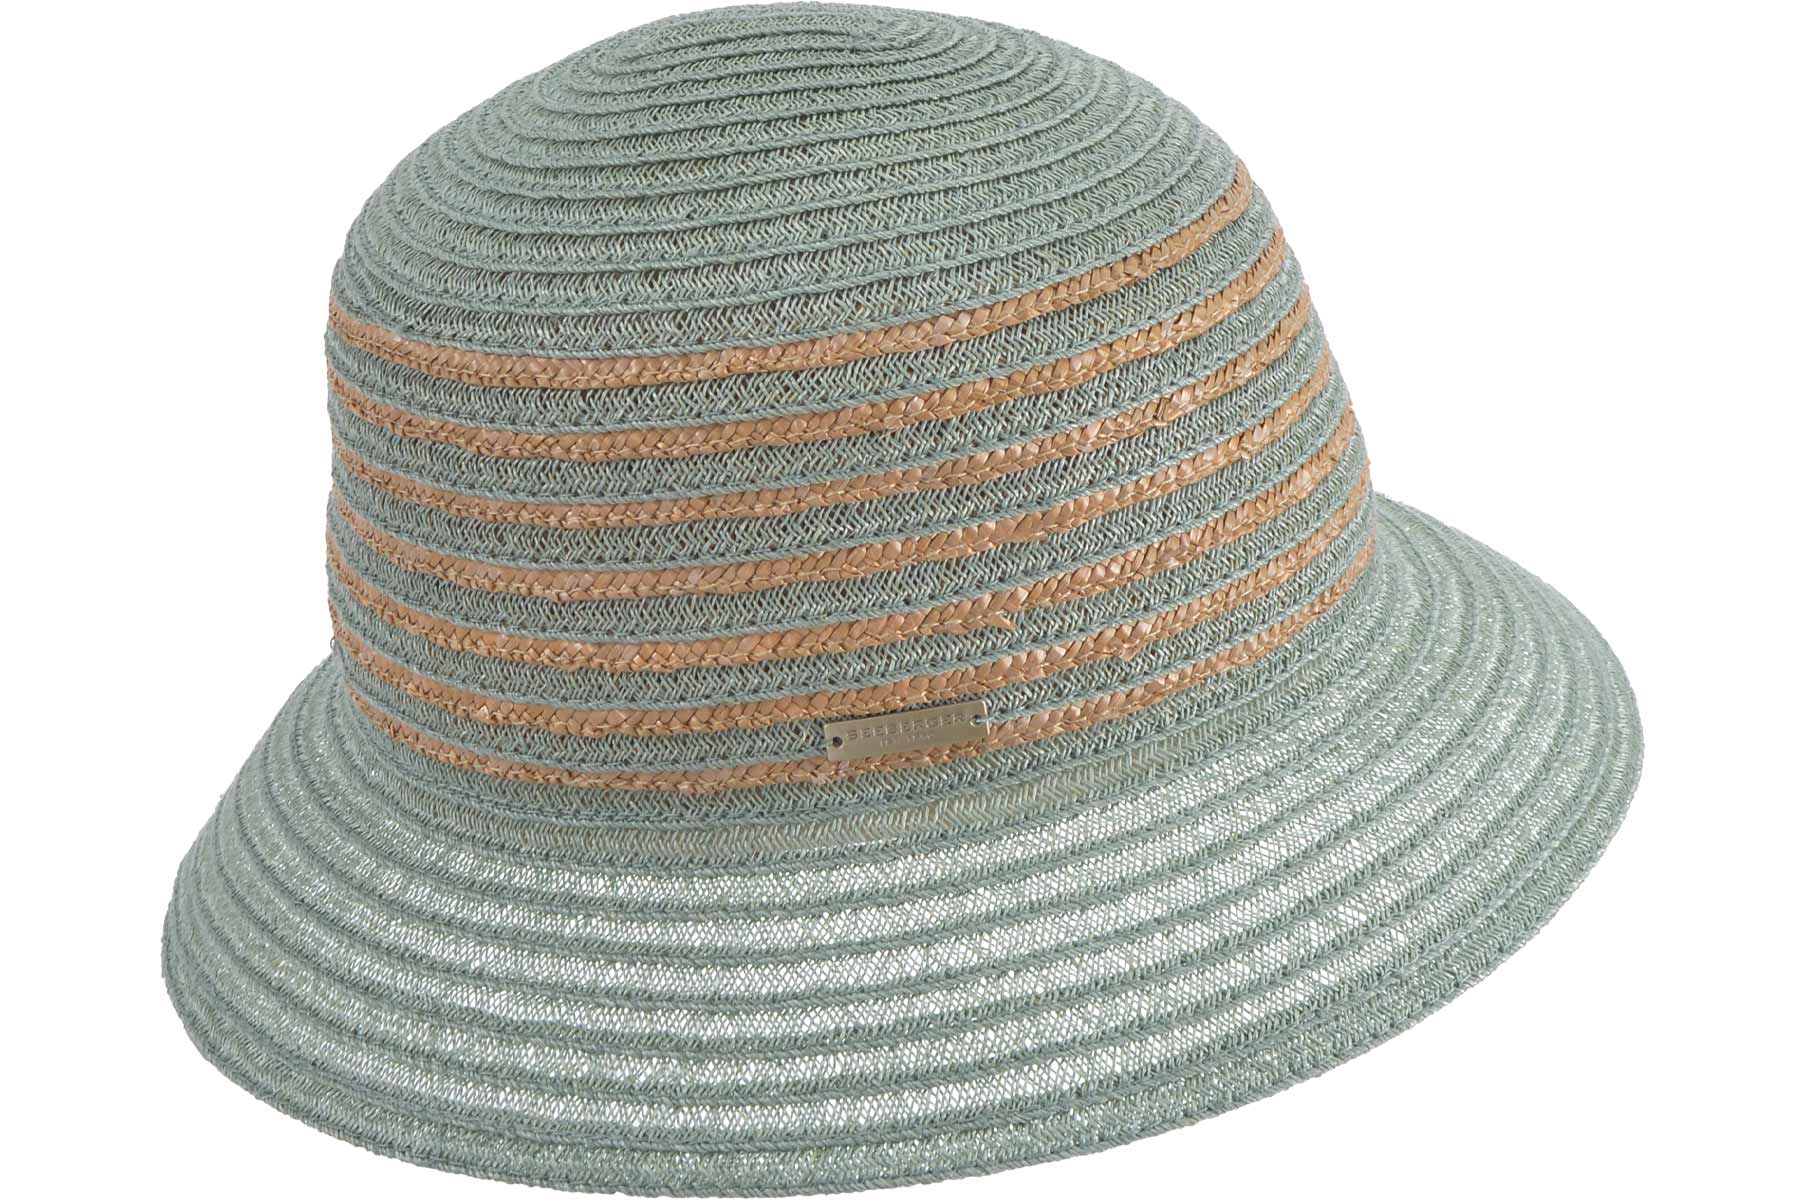 SEEBERGER women straw hat »naturalstraw braid mix cloche 55402-0 